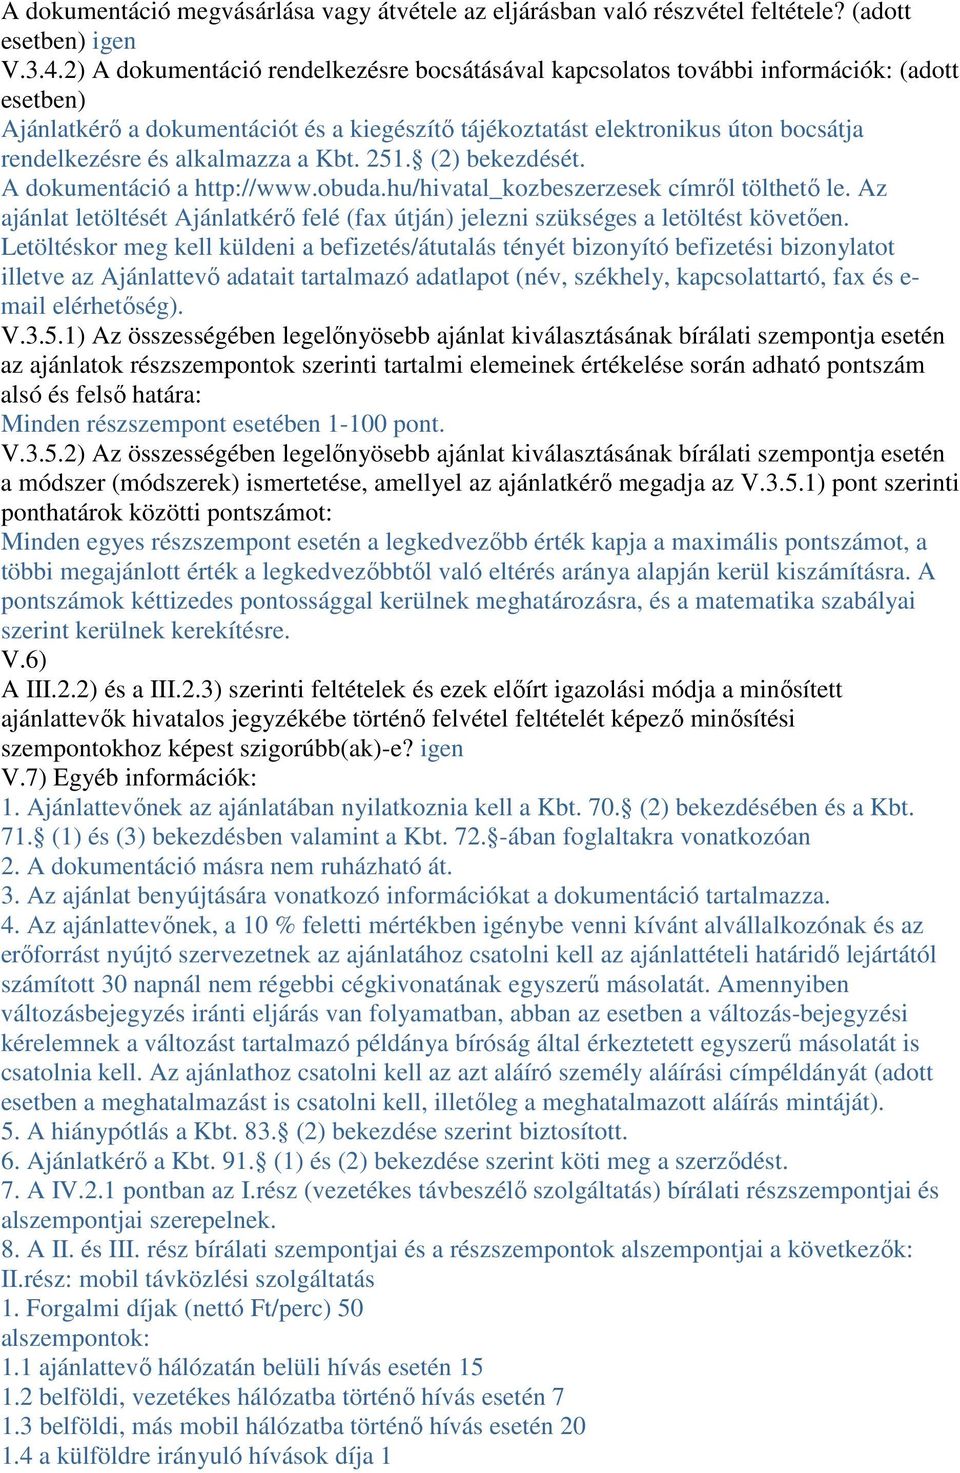 alkalmazza a Kbt. 251. (2) bekezdését. A dokumentáció a http://www.obuda.hu/hivatal_kozbeszerzesek címrıl tölthetı le.